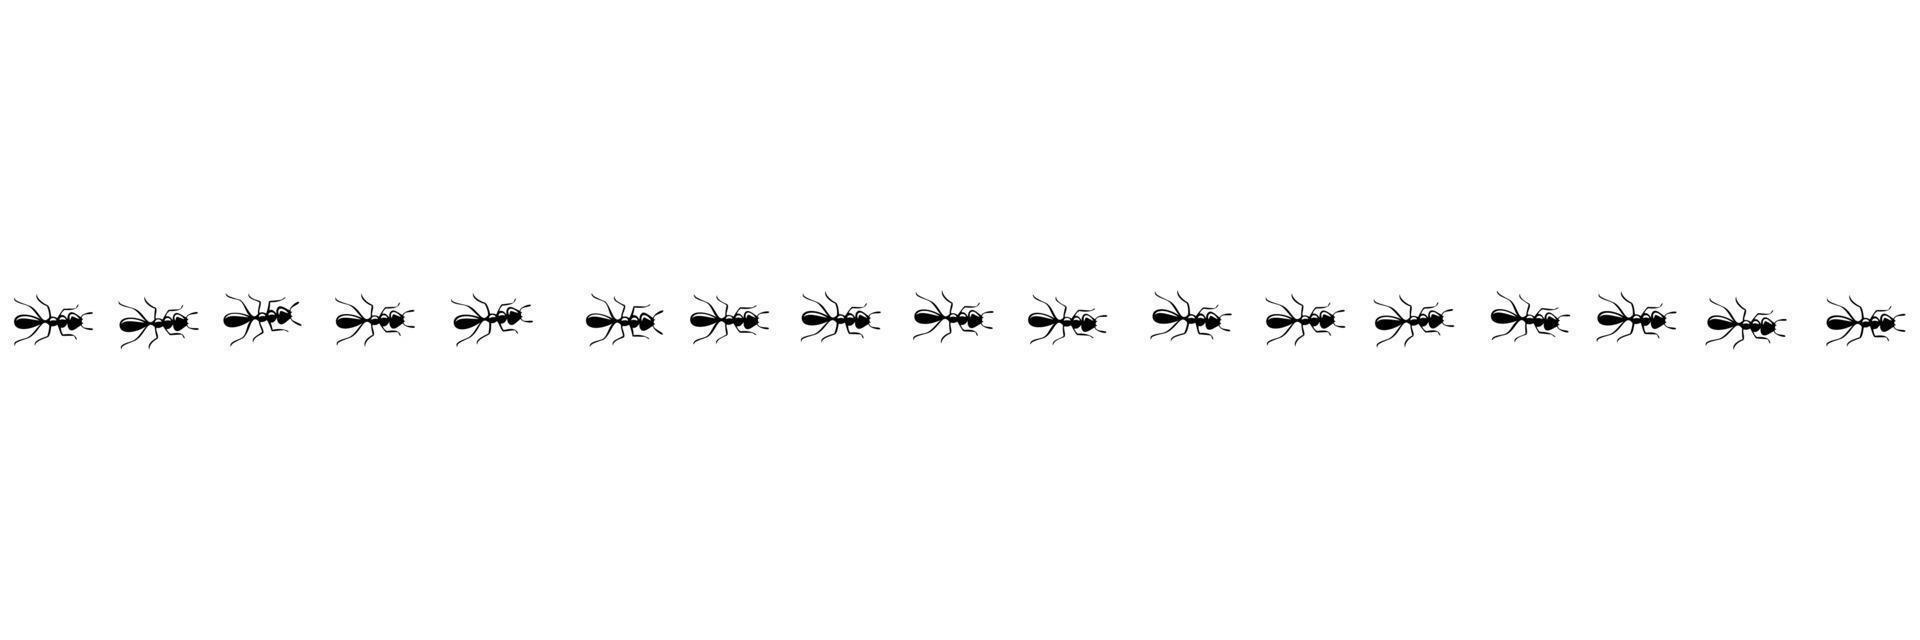 Ameisen marschieren auf der Spur. Ameisenweg lokalisiert im weißen Hintergrund. Vektor-Illustration vektor